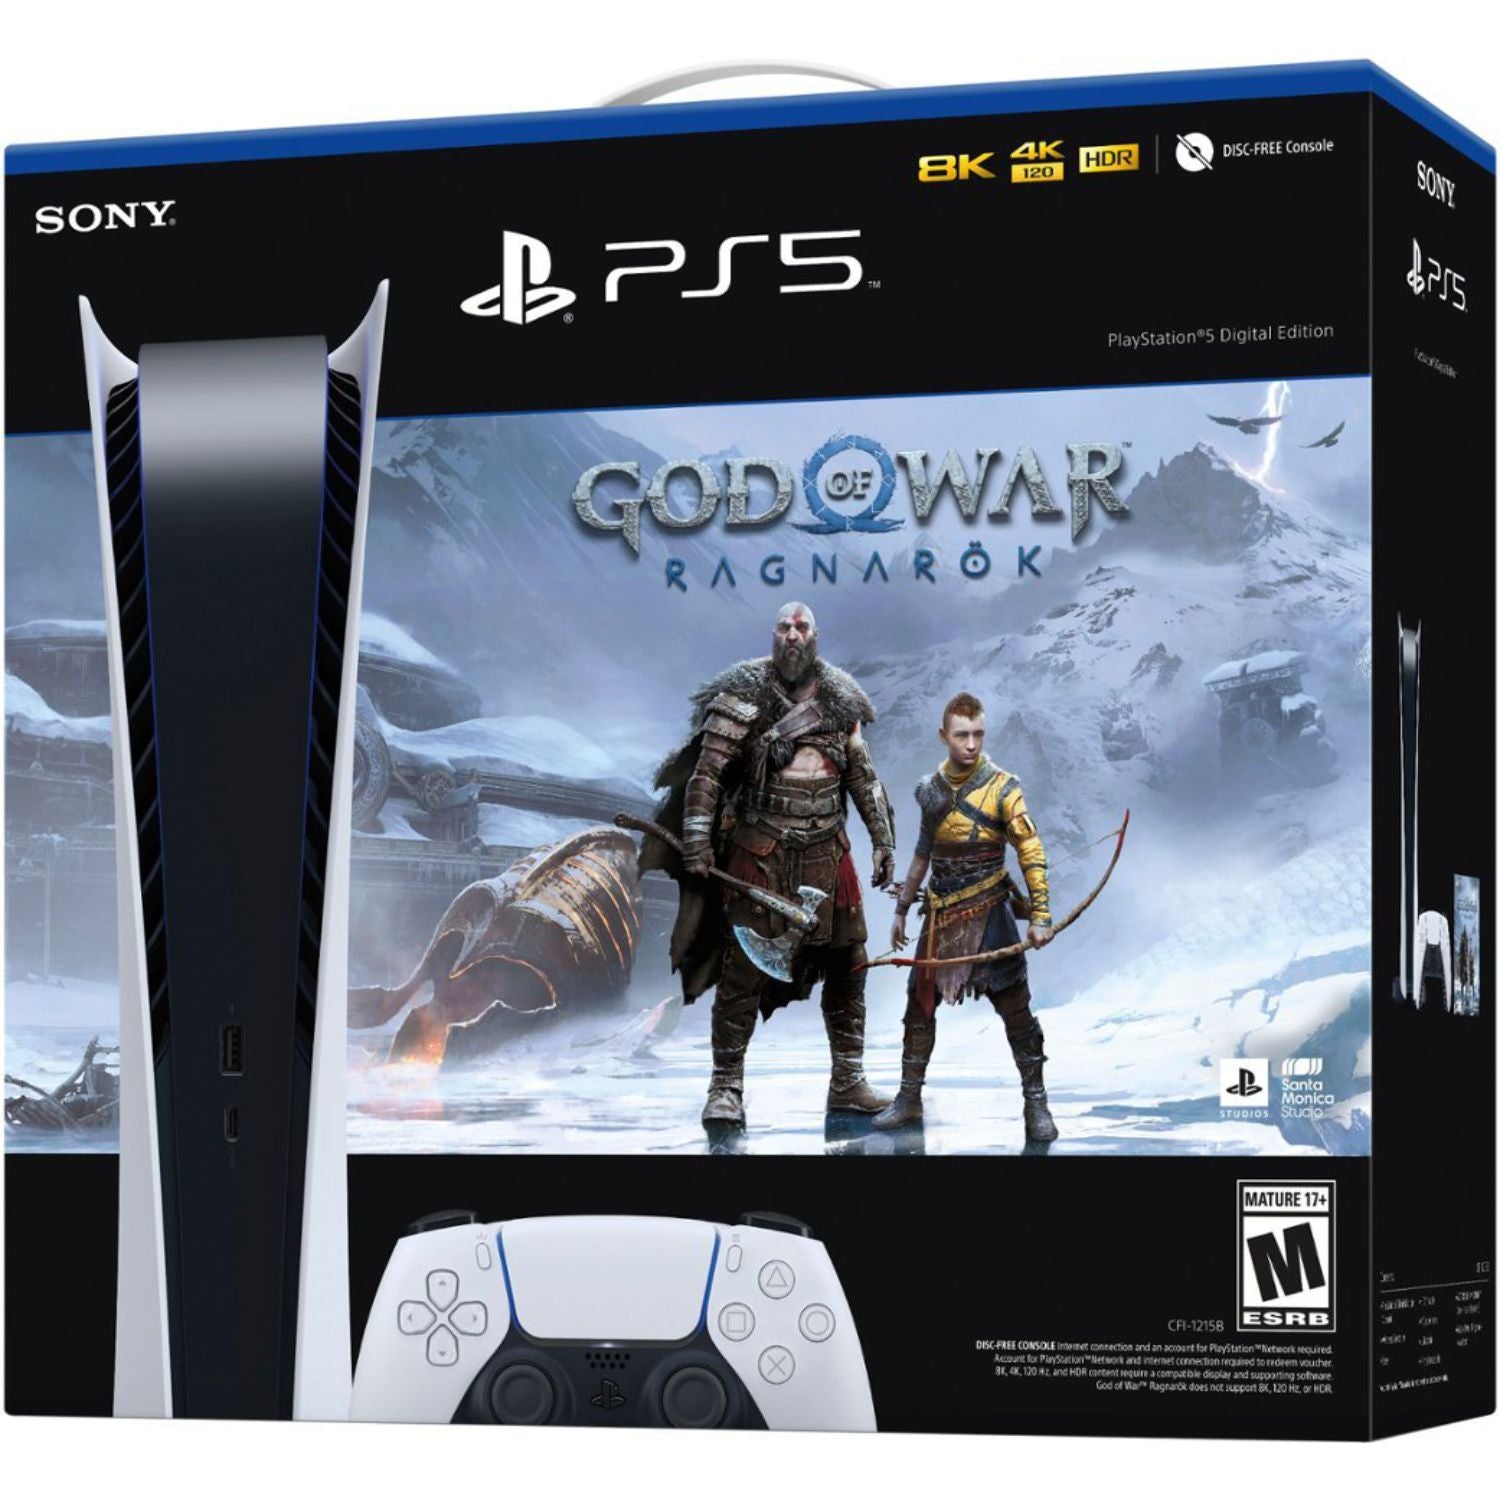 Sony PlayStation 5 Digital Edition God of War Ragnarök Console Bundle White